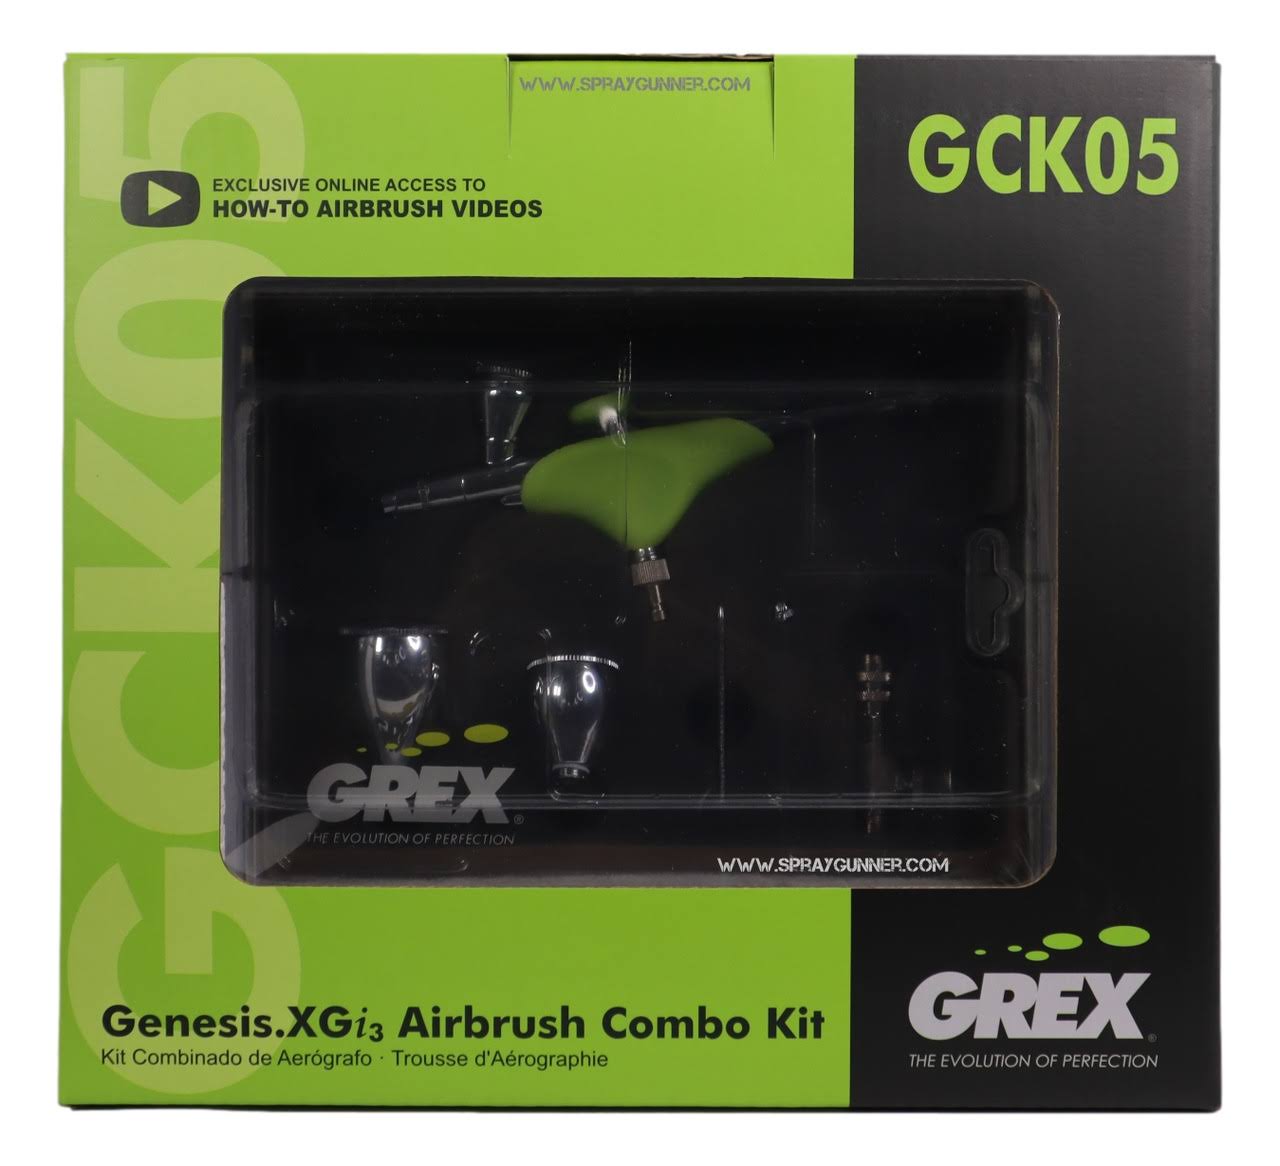 Grex Gck05 Genesis XGi3 Airbrush Combo Kit